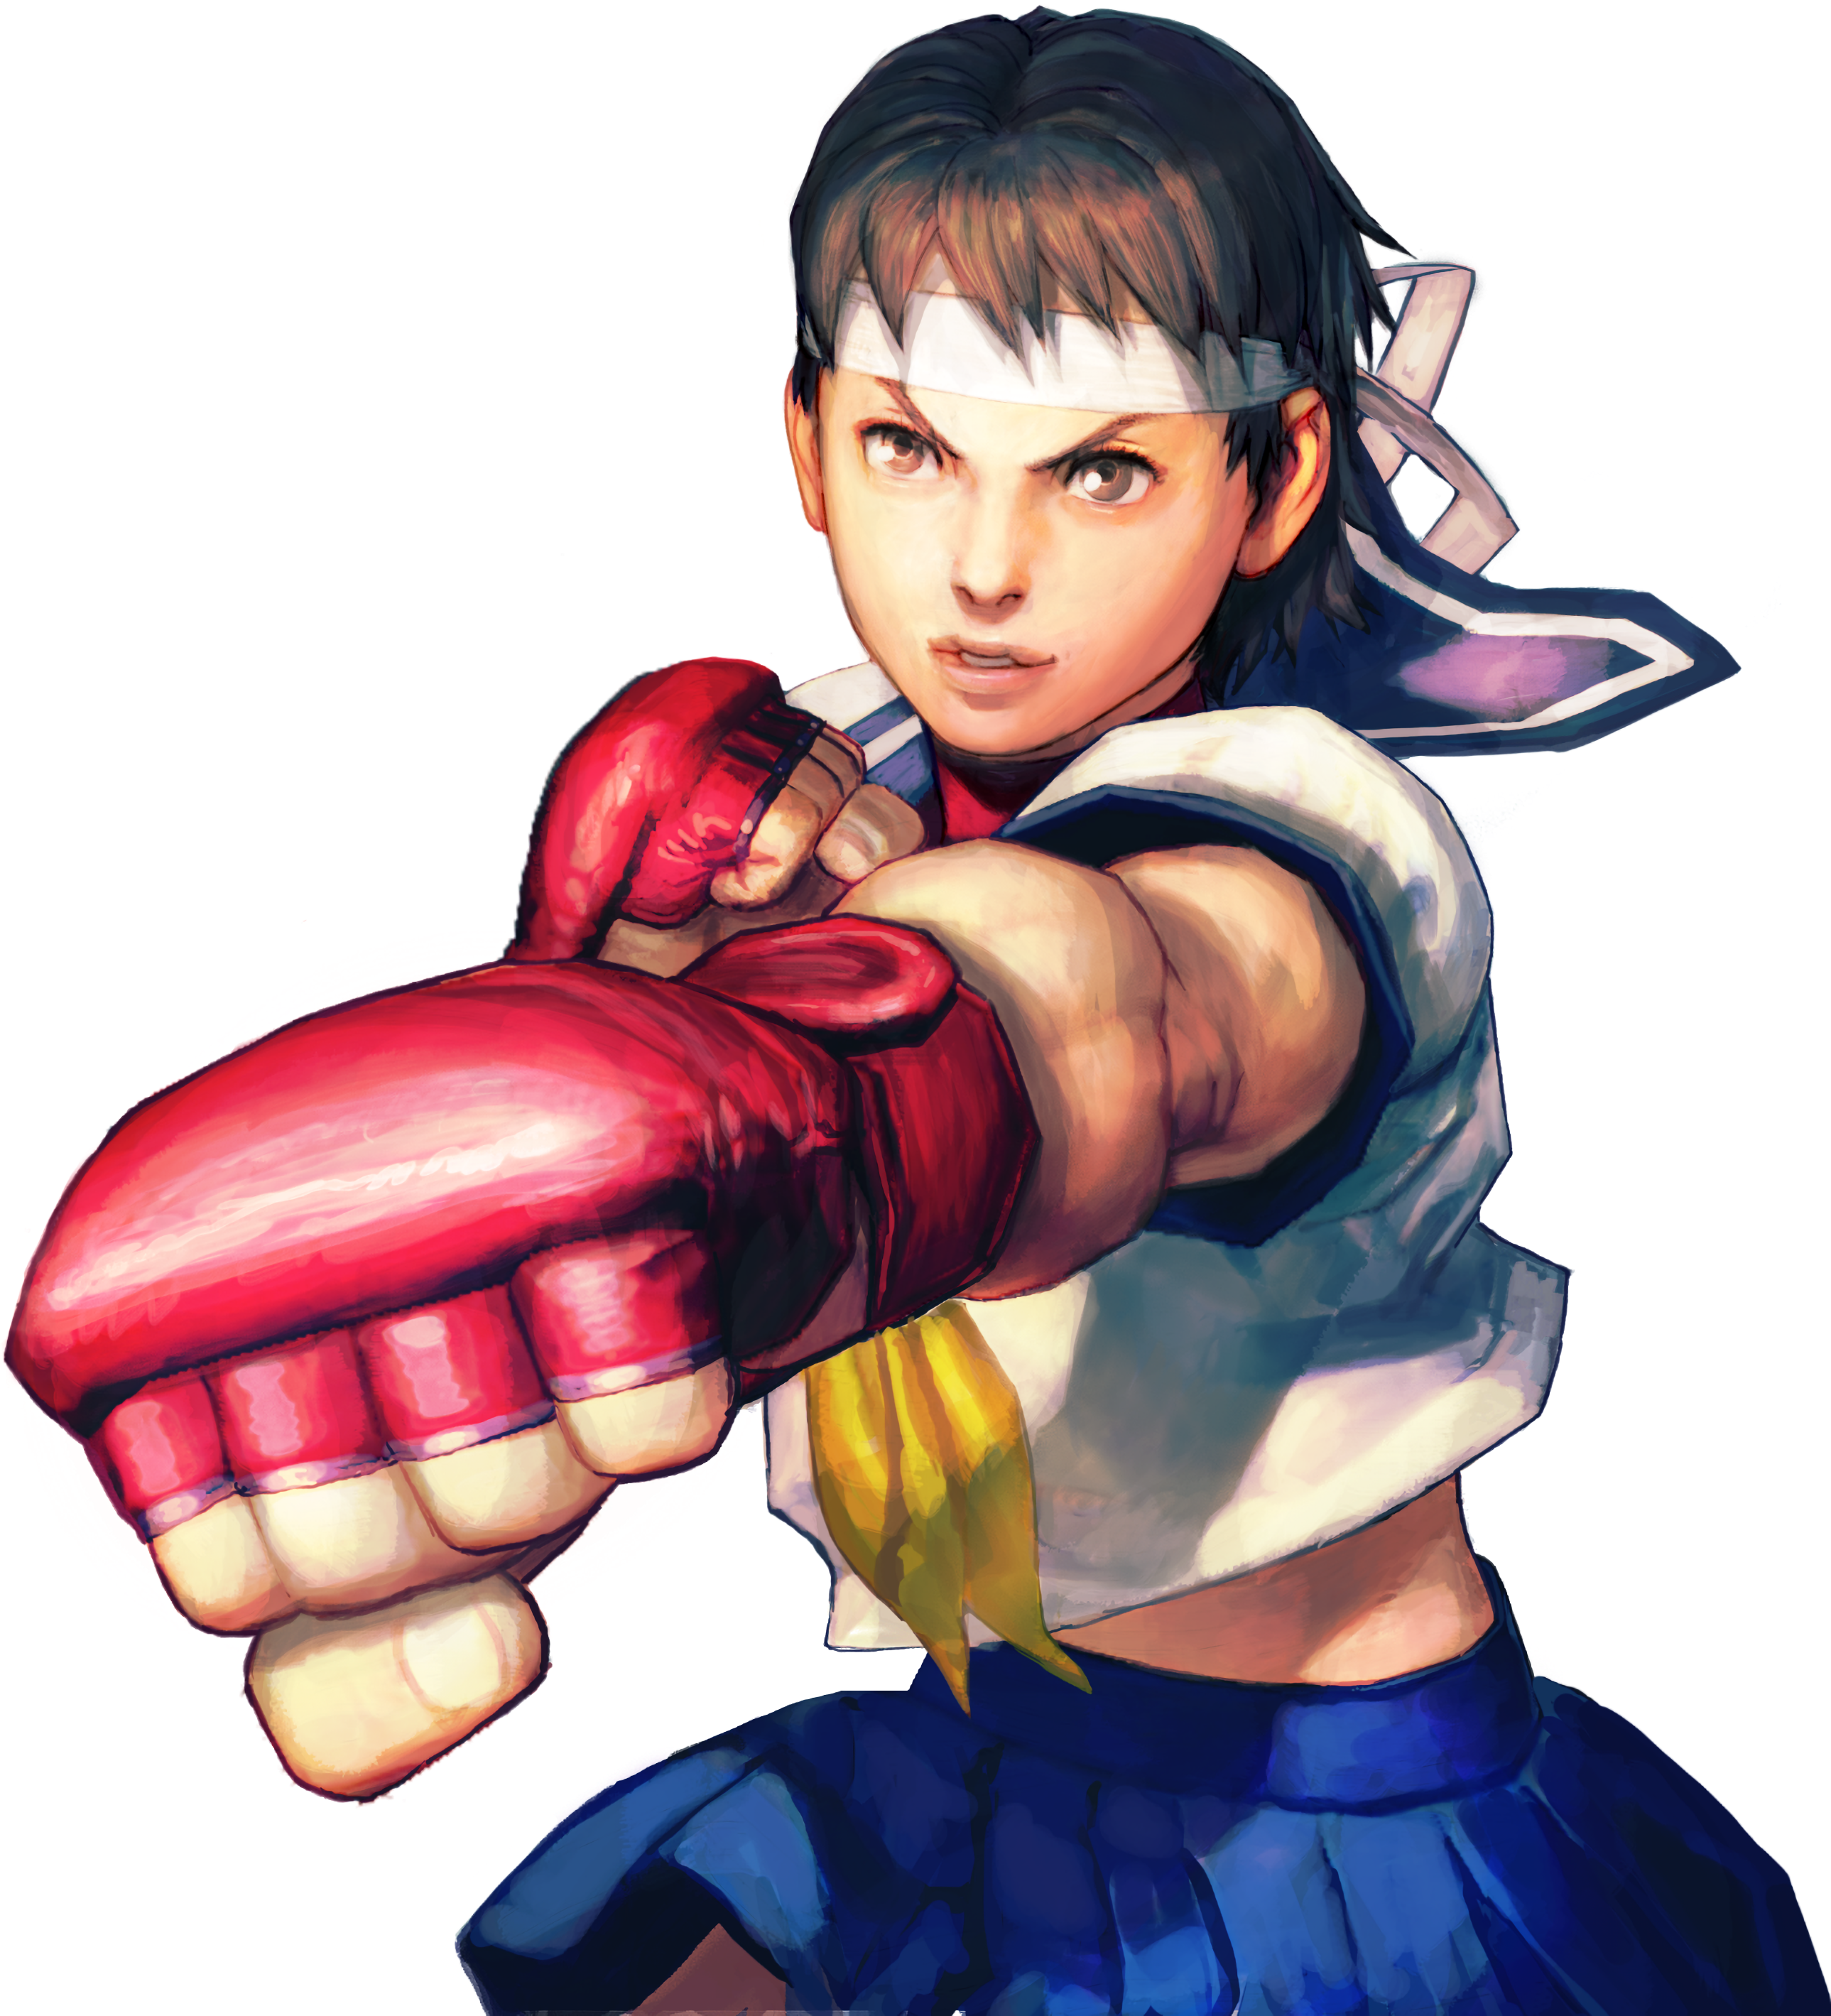 Sakura Street Fighter png download - 730*1095 - Free Transparent